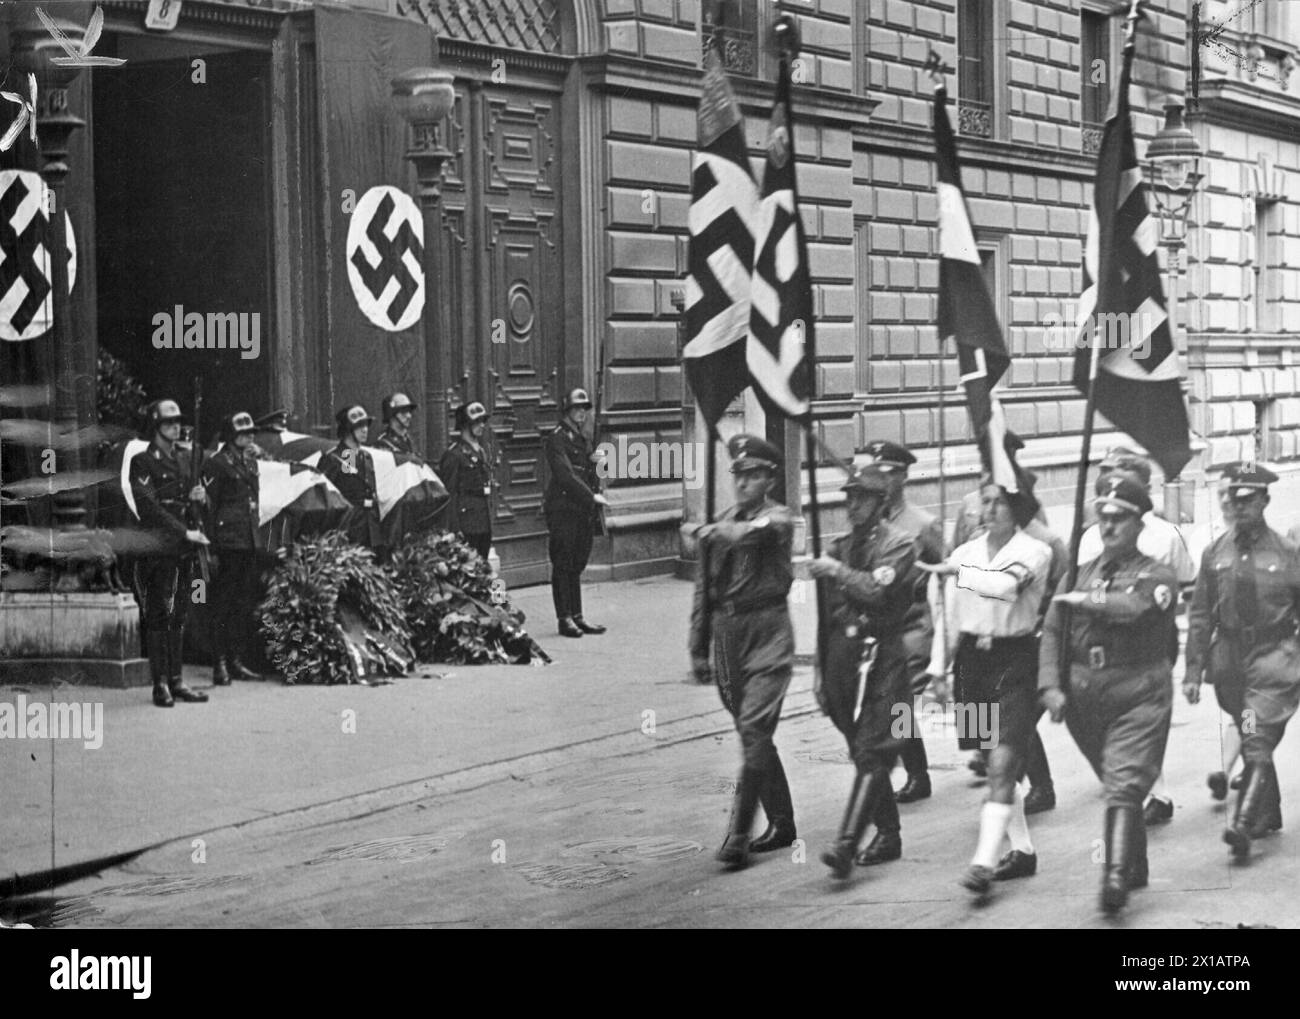 Beerdigungsempfang für die SS-Männer Max Peschke und Joseph Meise, marschiert-vorbei vor dem Auslegen im Tor das Büro der SS-Oberteil DDR-Mark auf dem Parkring in Wien, 10.7.1938 - 19380710 PD0020 - Rechteinfo: Rights Managed (RM) Stockfoto